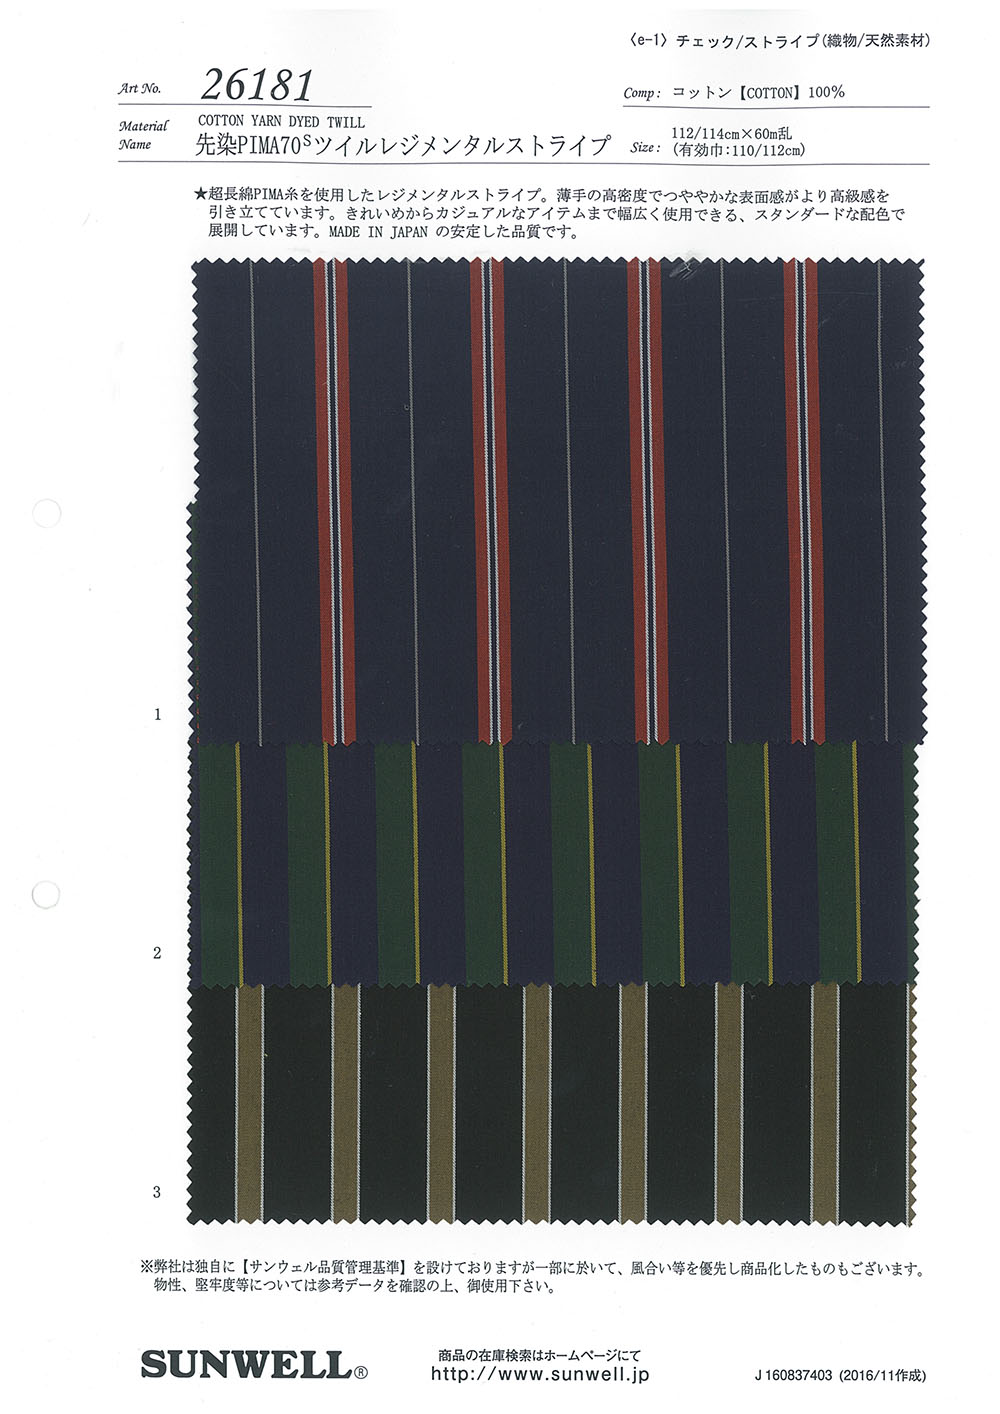 26181 Yarn Dyed PIMA70 Thread Twill Regimental Stripe[Textile / Fabric] SUNWELL